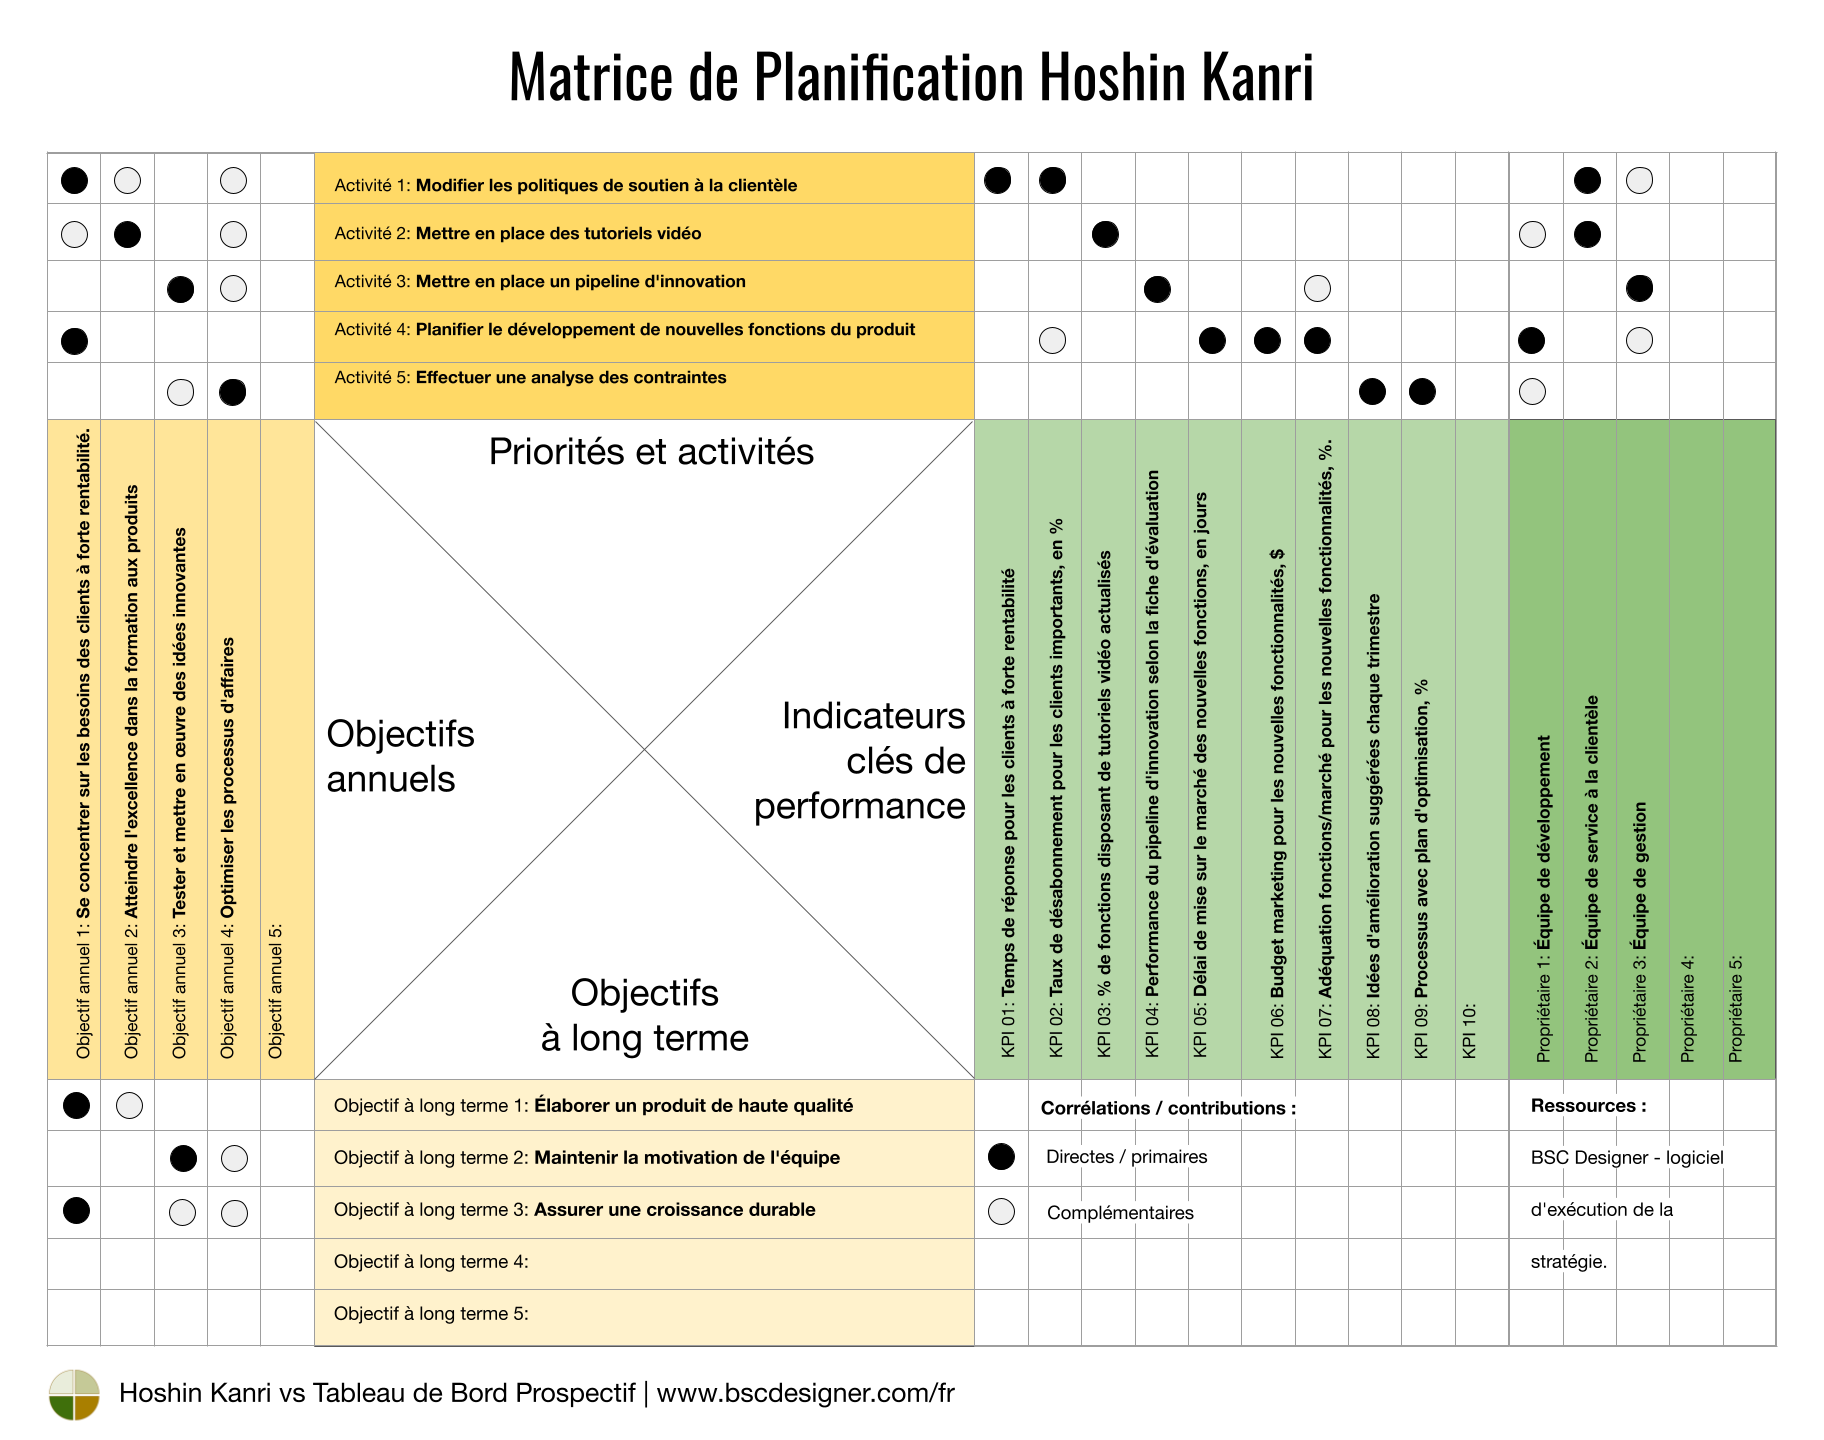 Hoshin Kanri Planning Matrix